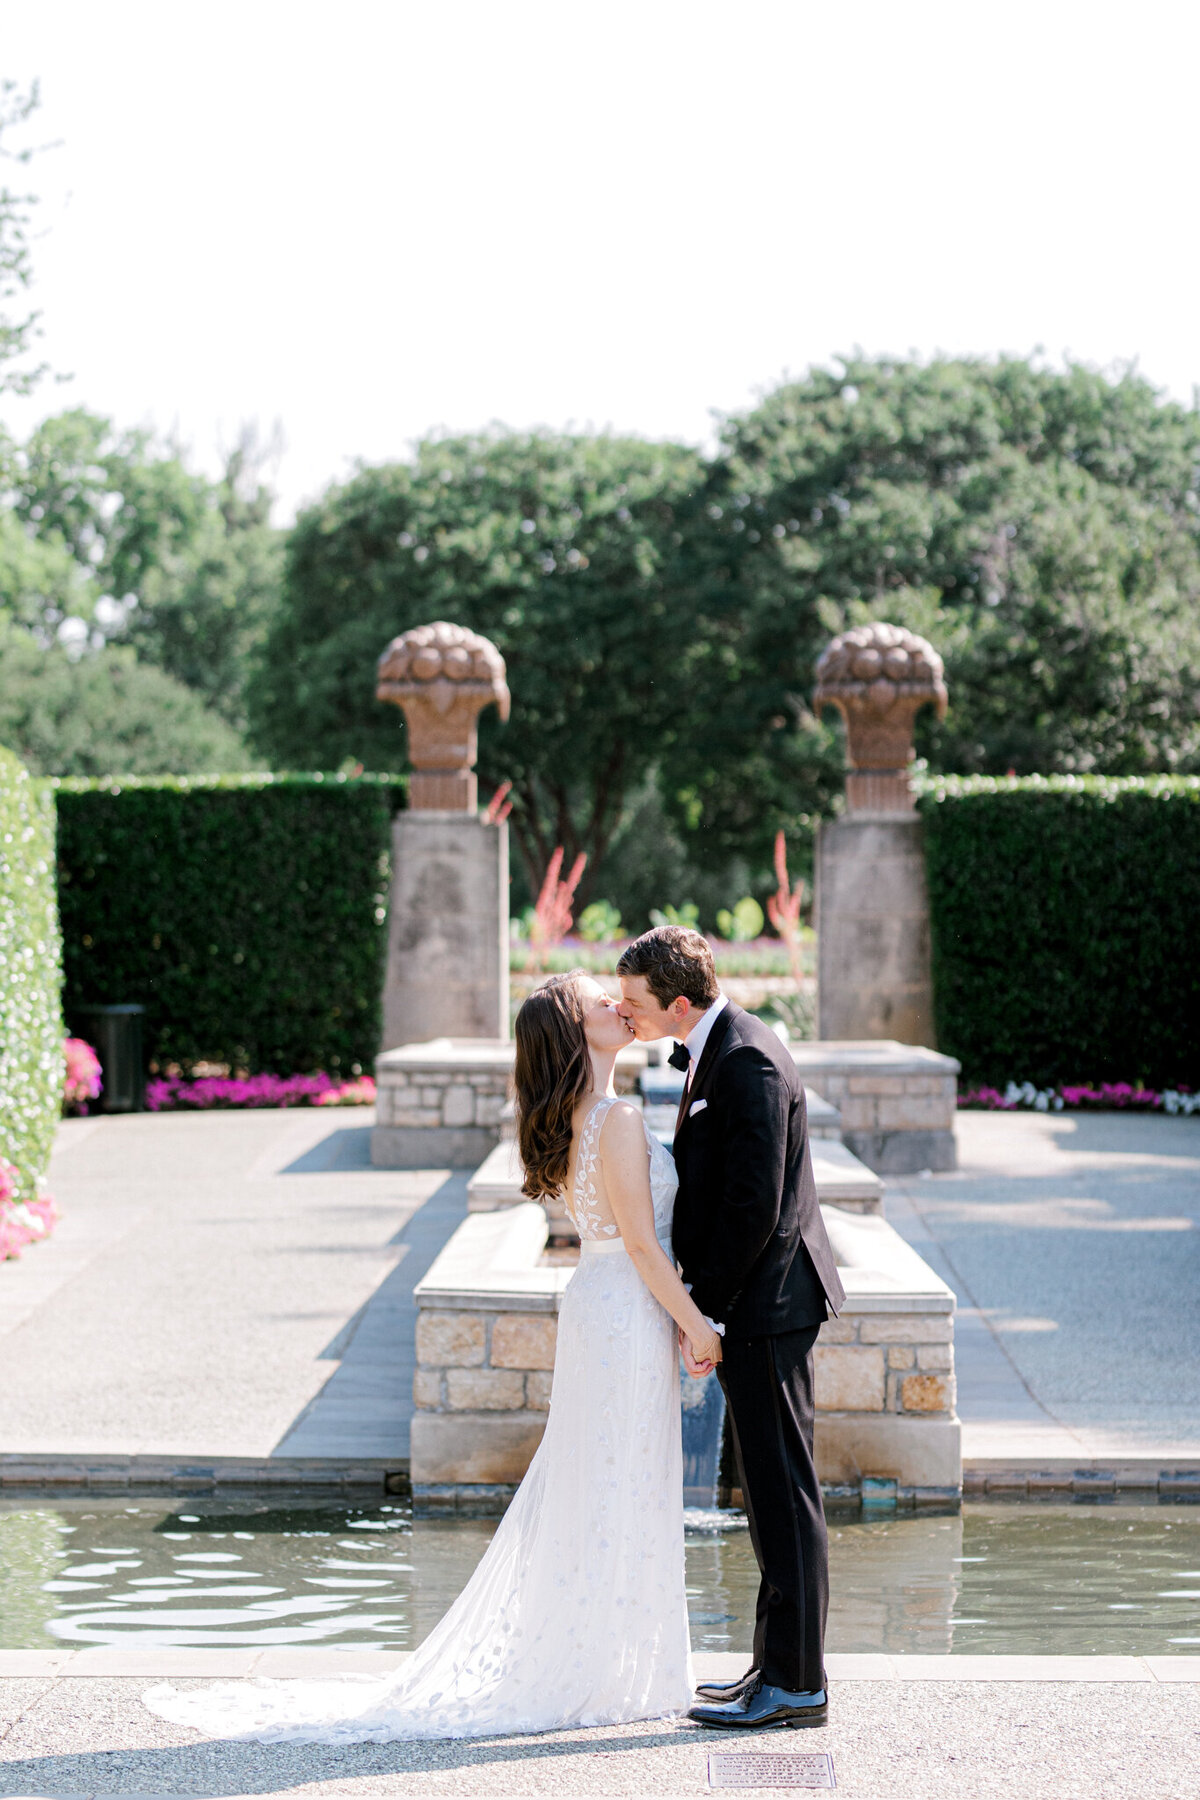 Gena & Matt's Wedding at the Dallas Arboretum | Dallas Wedding Photographer | Sami Kathryn Photography-92